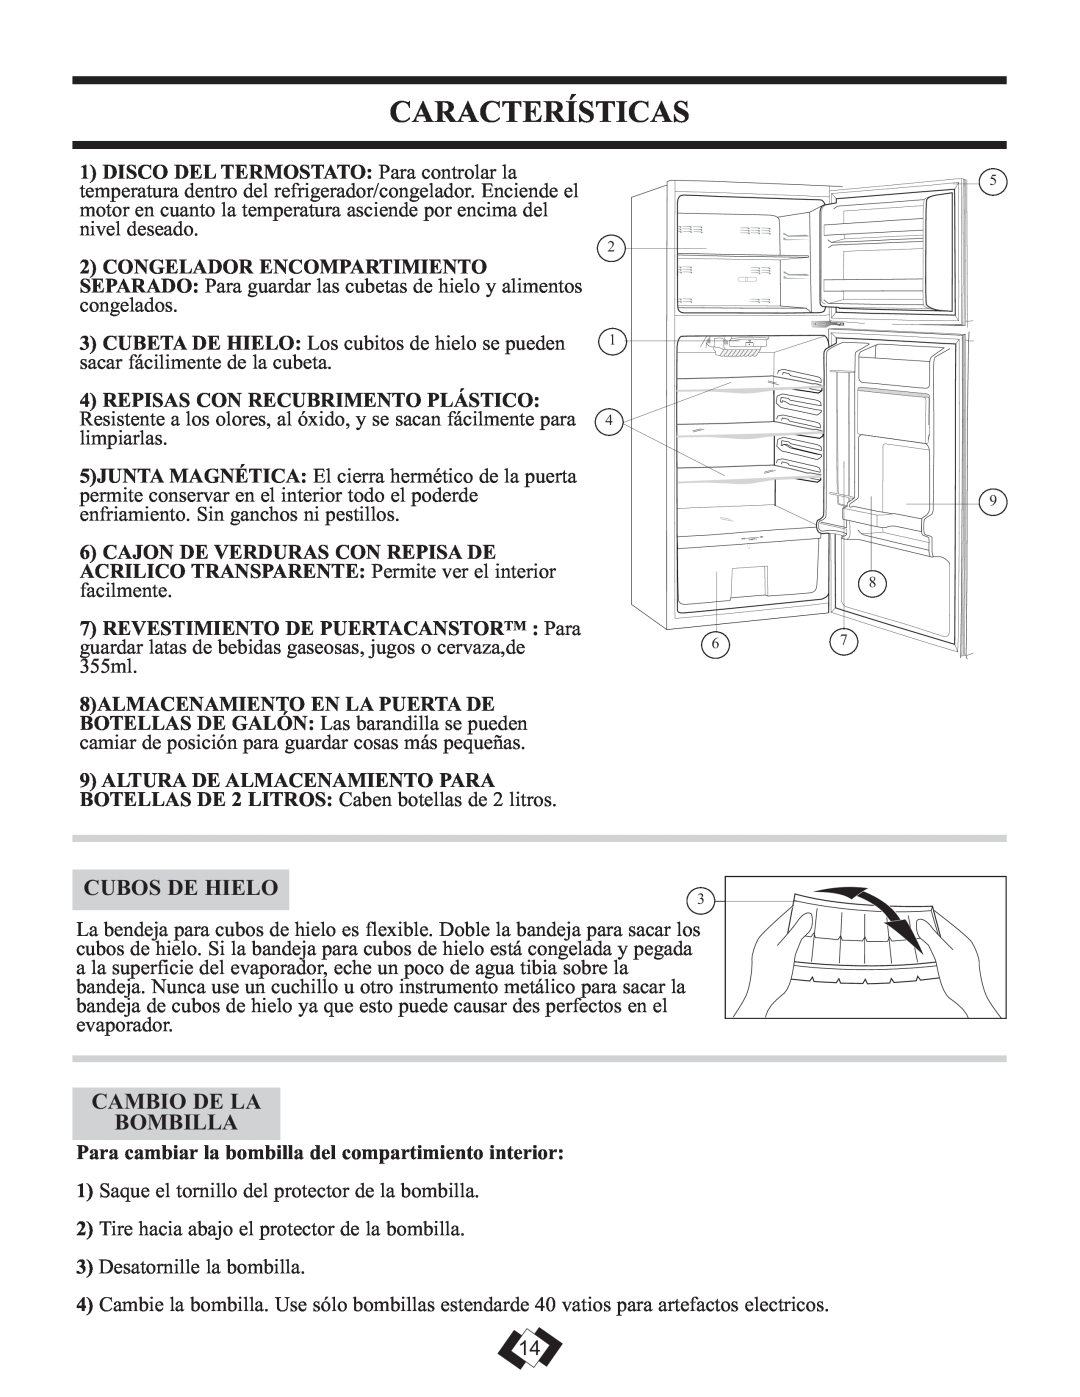 Sunbeam DFF258WSB installation instructions Características, Cubos De Hielo, Cambio De La Bombilla 